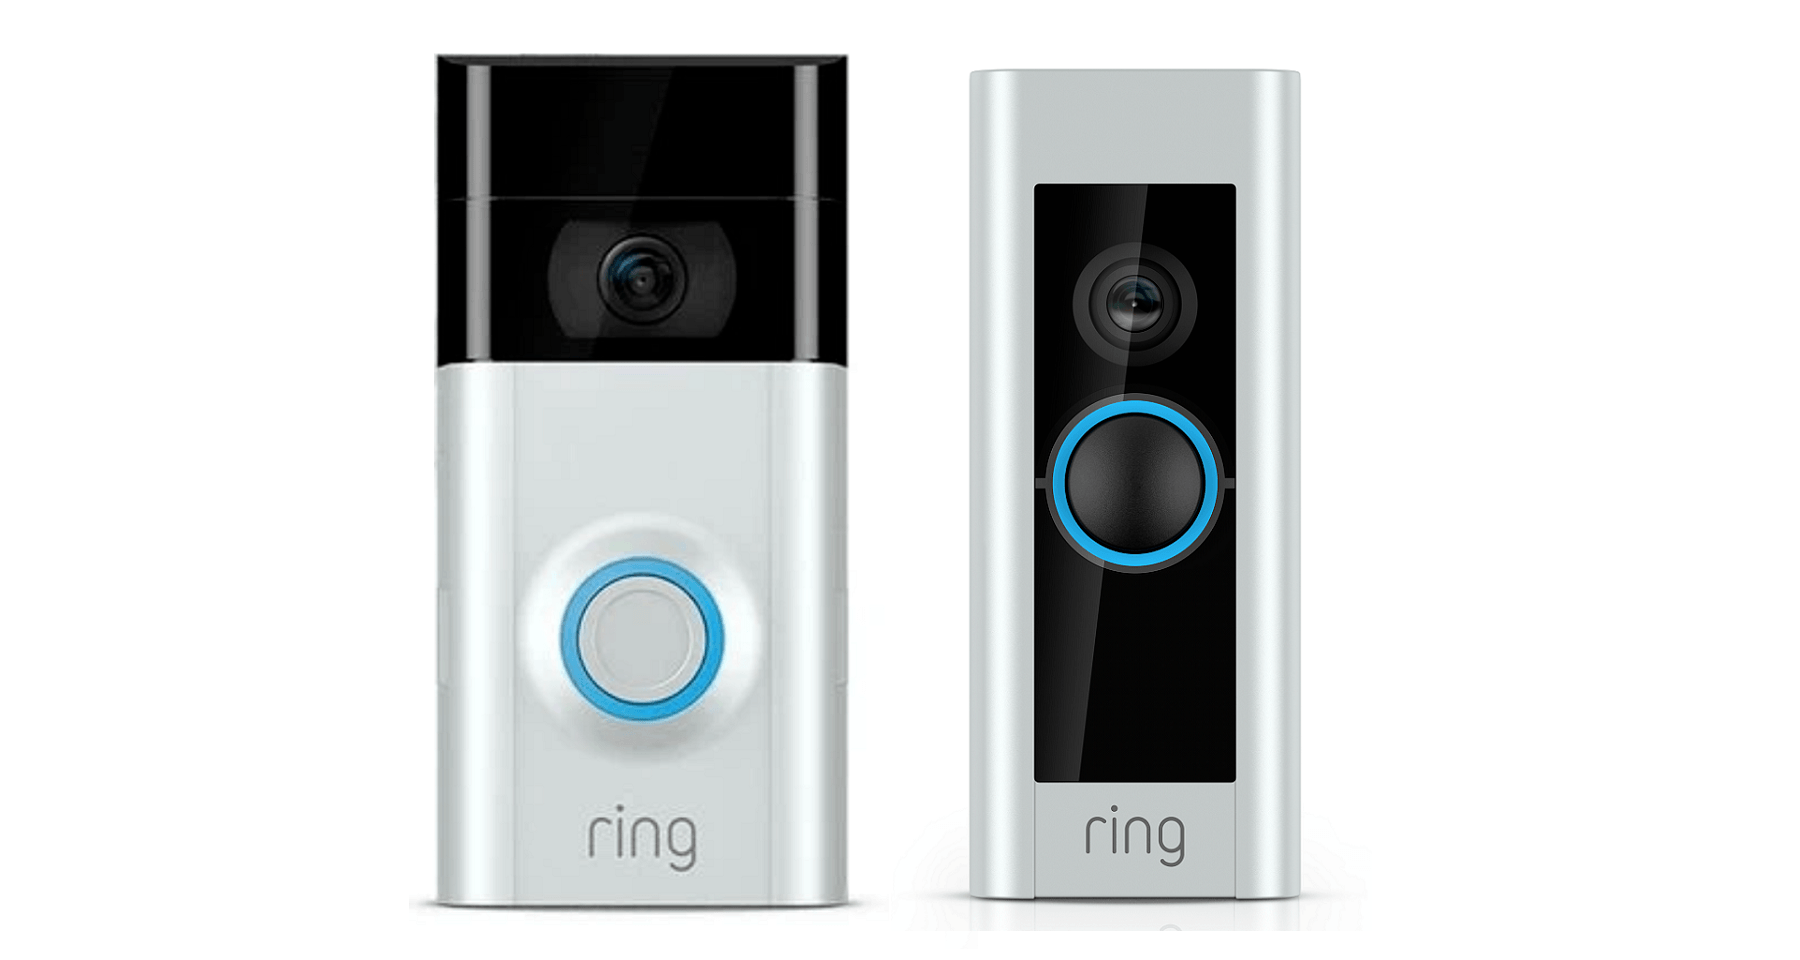 ring 2 doorbell offers